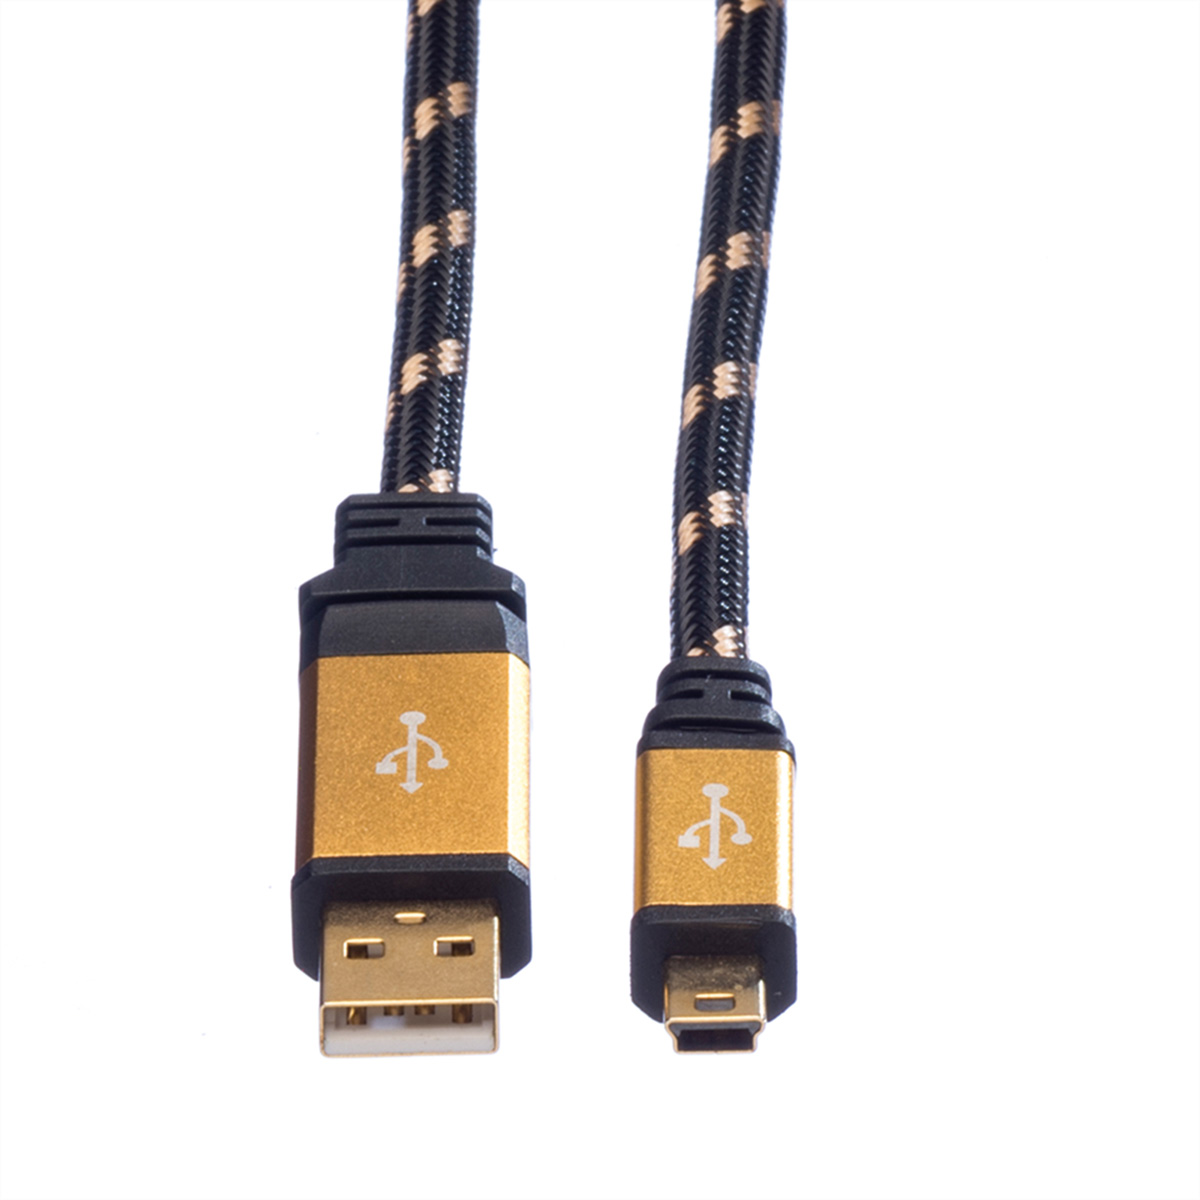 Typ Mini GOLD 2.0 2.0 USB Kabel Kabel, A ROLINE USB 5-Pin - Mini